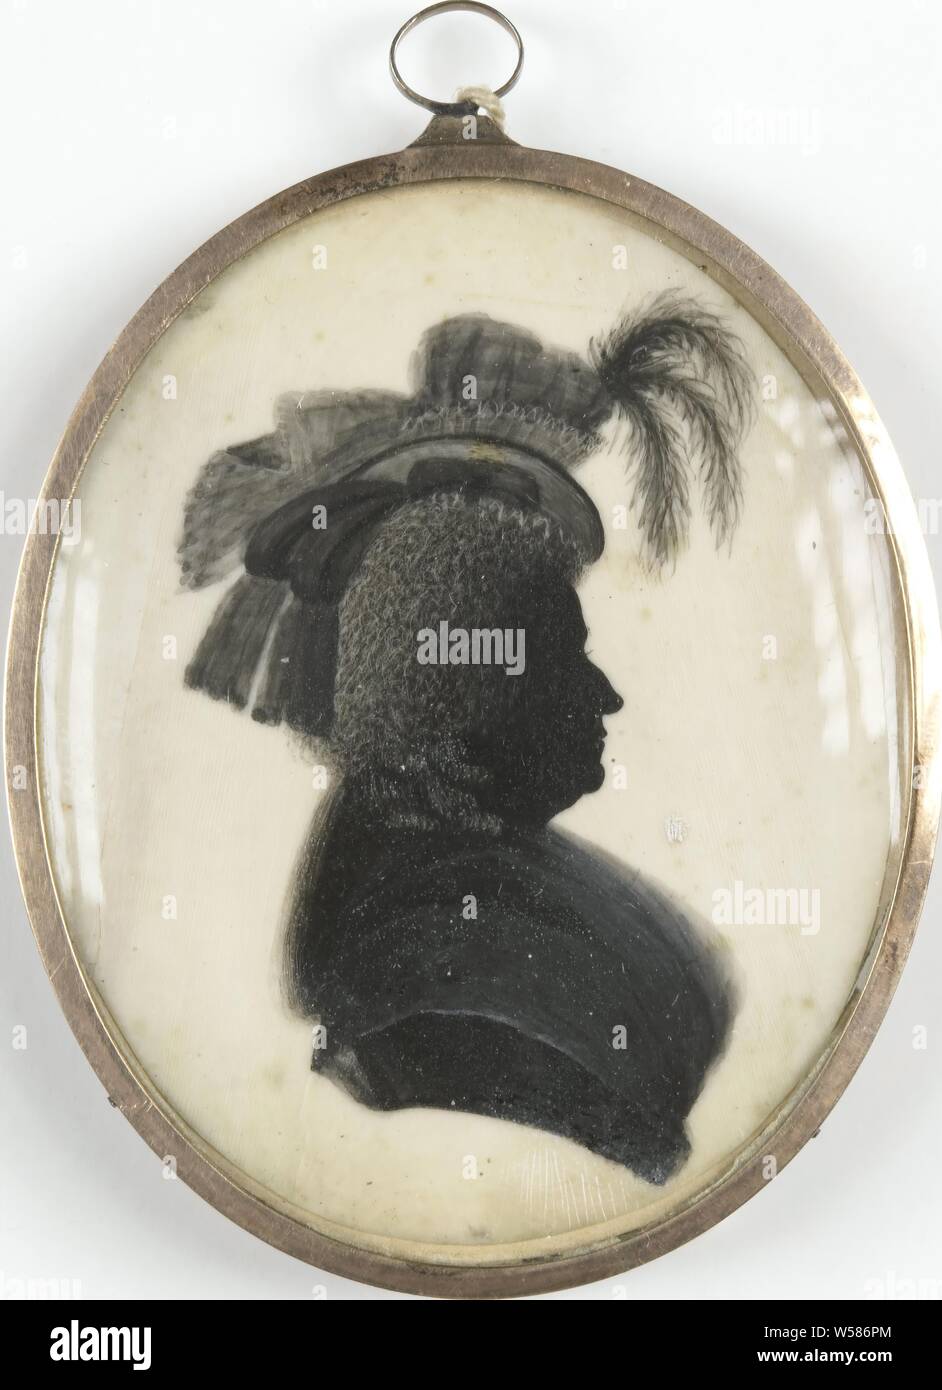 Ritratto di una donna, Silhouette ritratto di Suriname (?) Donna. Busto, a destra, un cappello con tre piume sulla testa., anonimo, Paesi Bassi del Nord, c. 1790, avorio, metallo, vetro, h 5.4 cm × w 4,5 cm h 6.1 cm × W 4.4 cm × d 0,3 cm Foto Stock